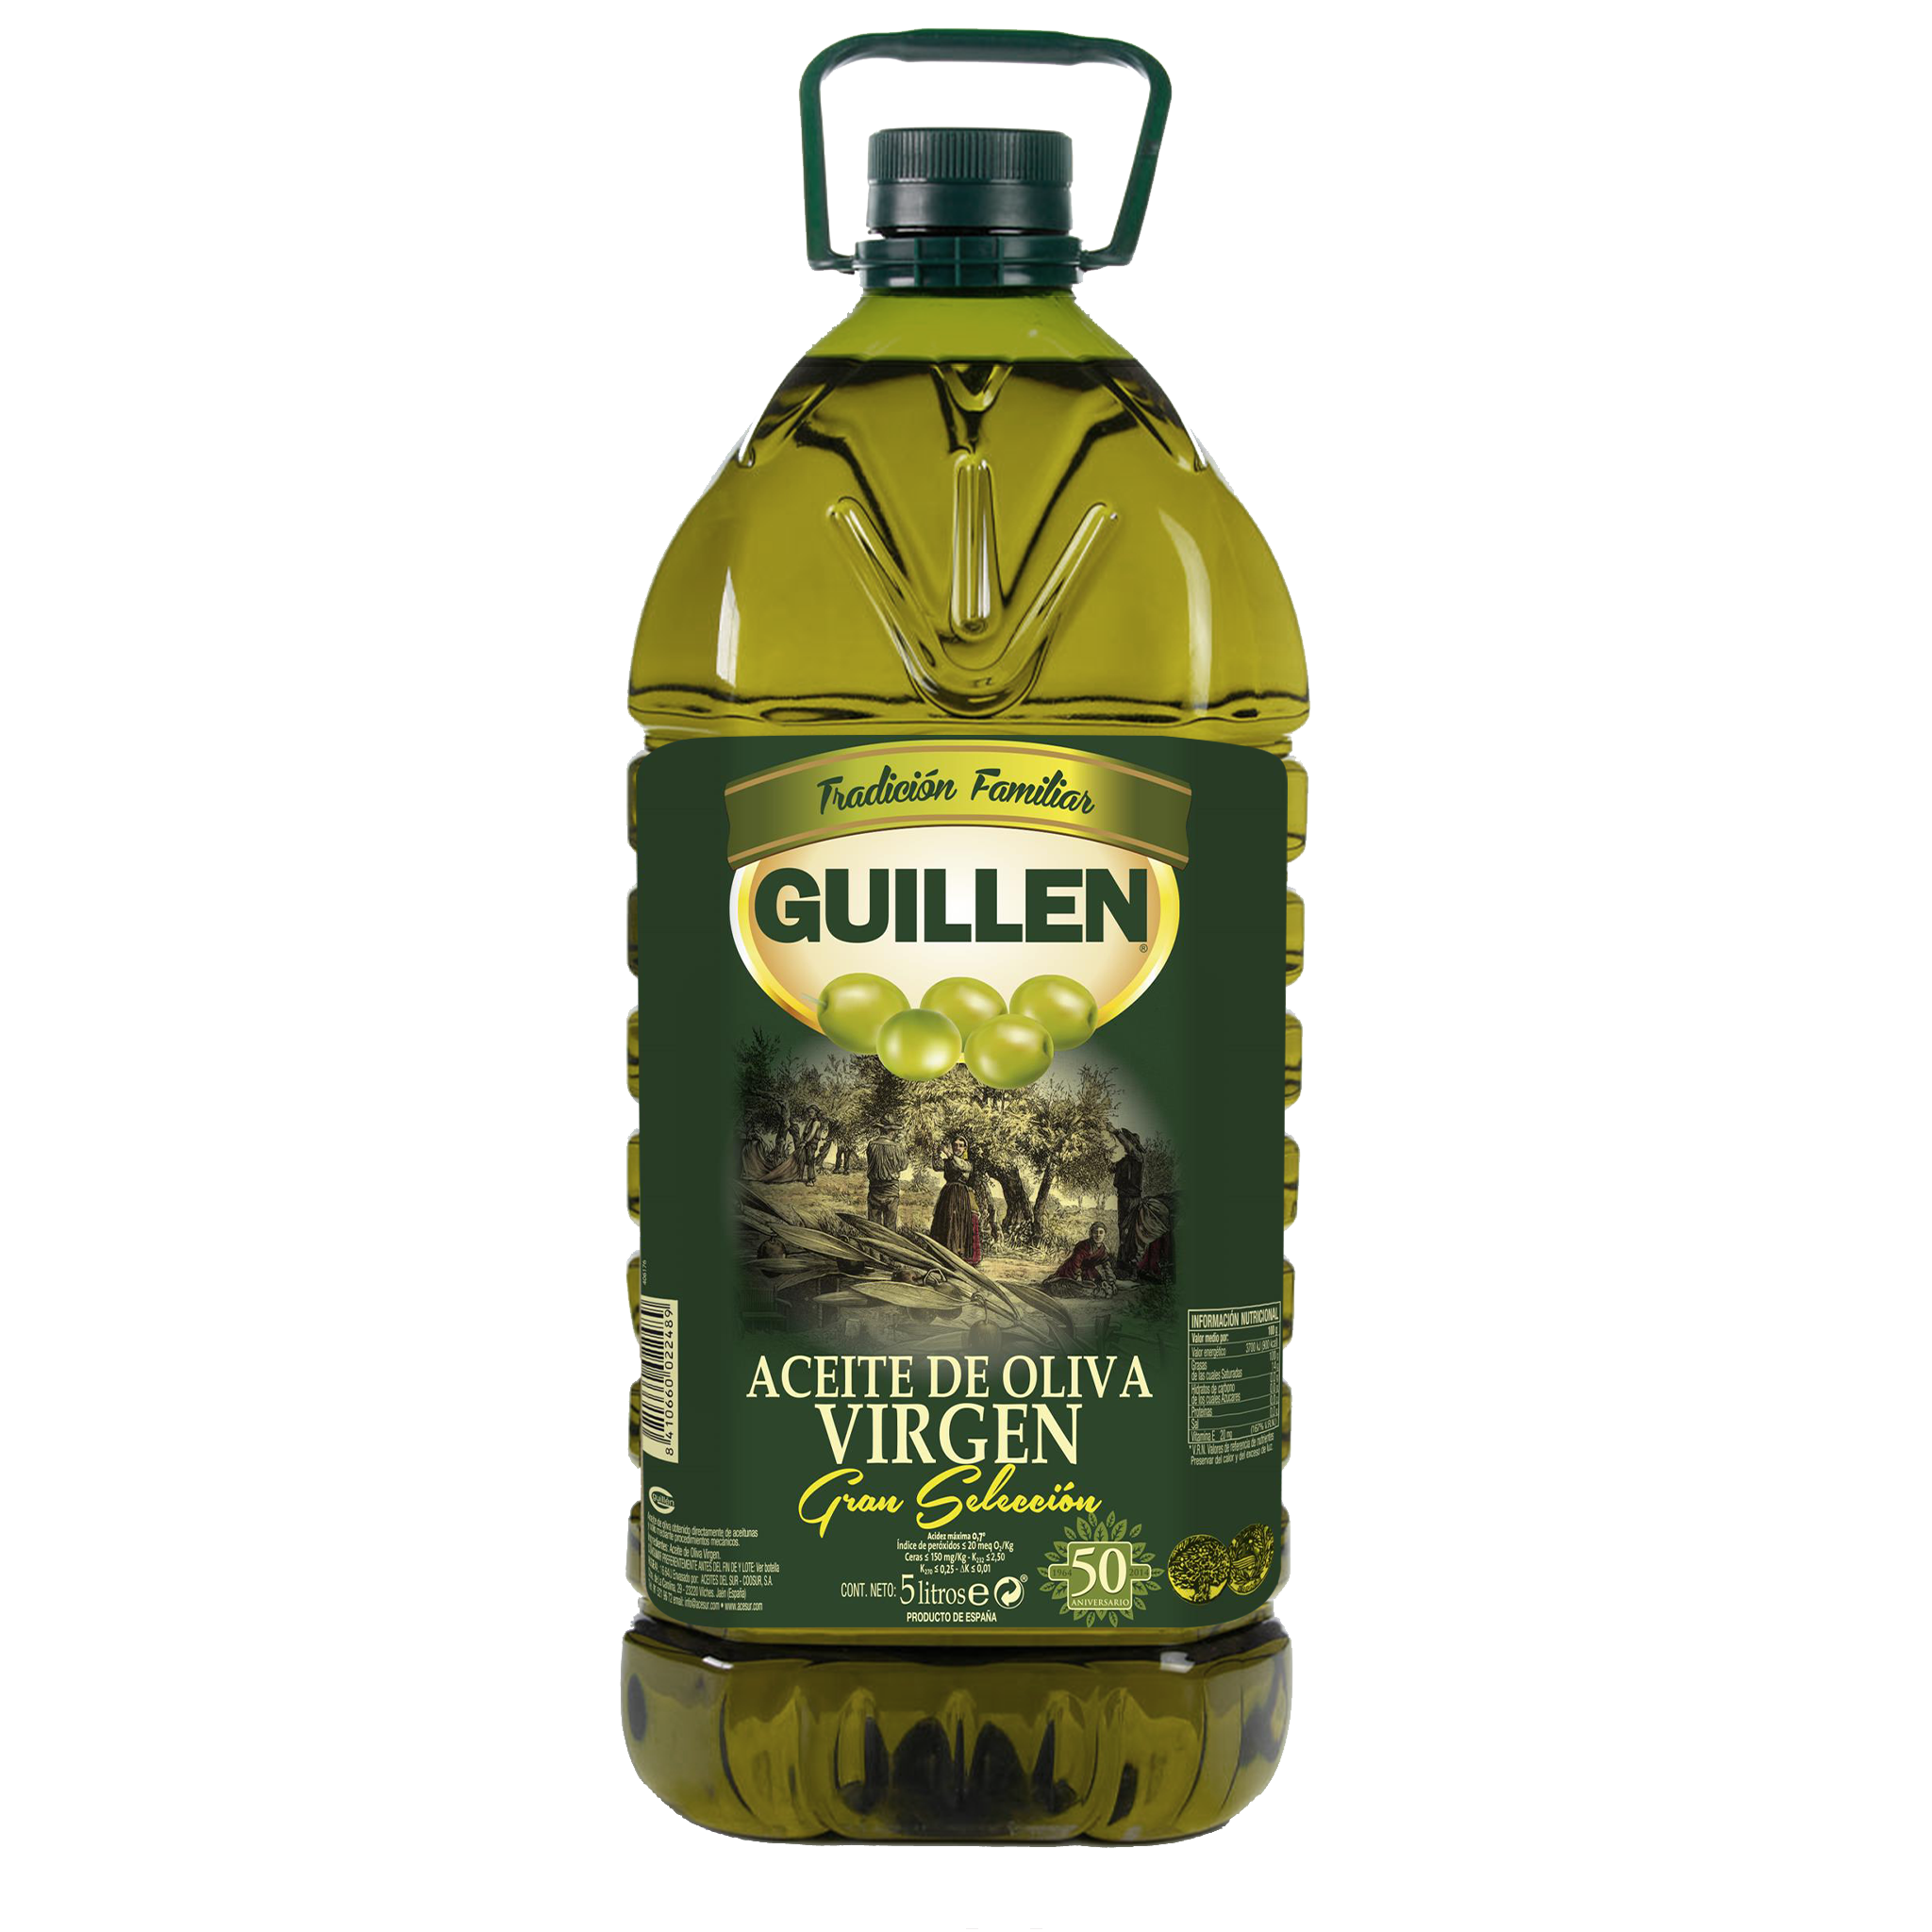 Aceite de oliva virgen extra, Envase de 5 litros